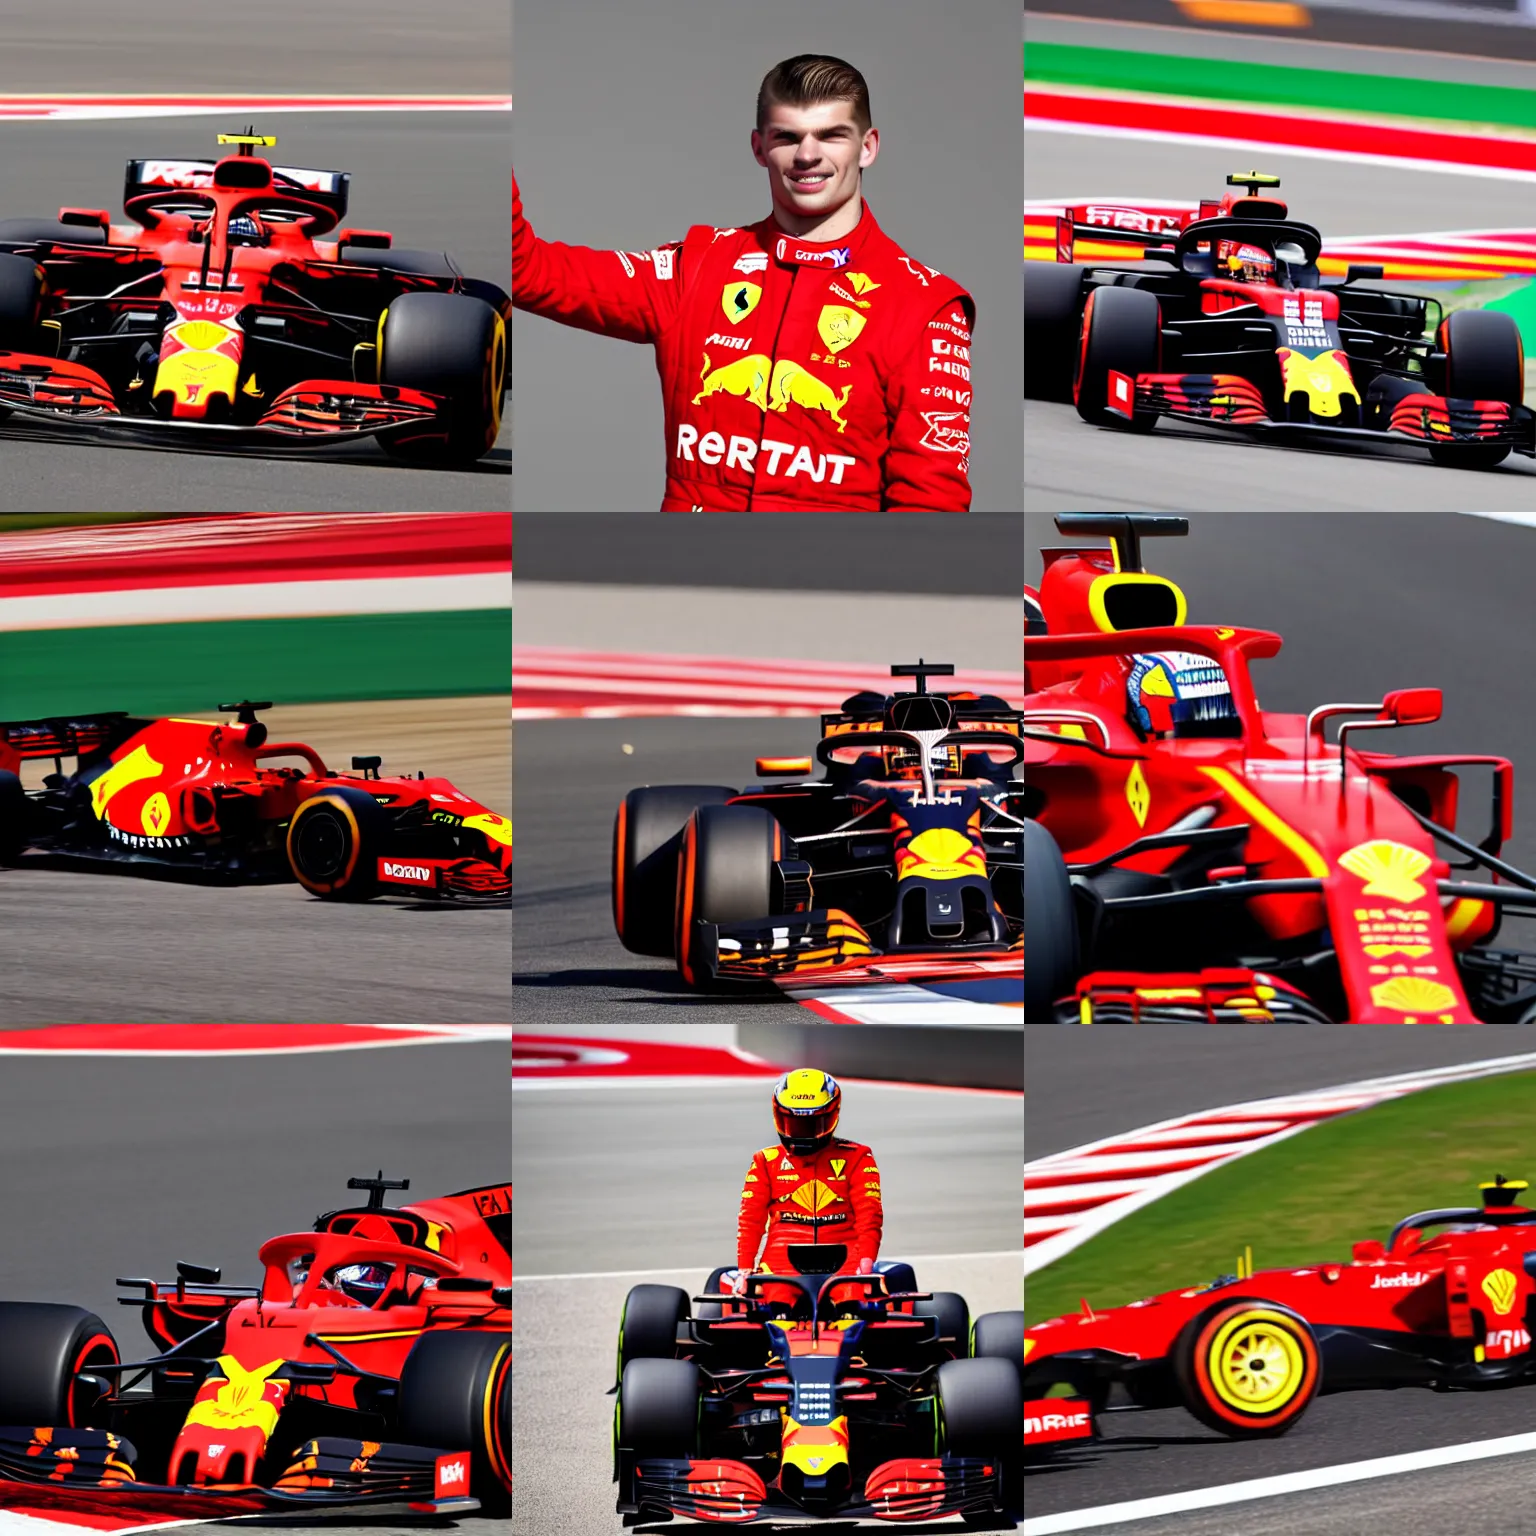 Image similar to Max Verstappen driving for Ferrari F1 team